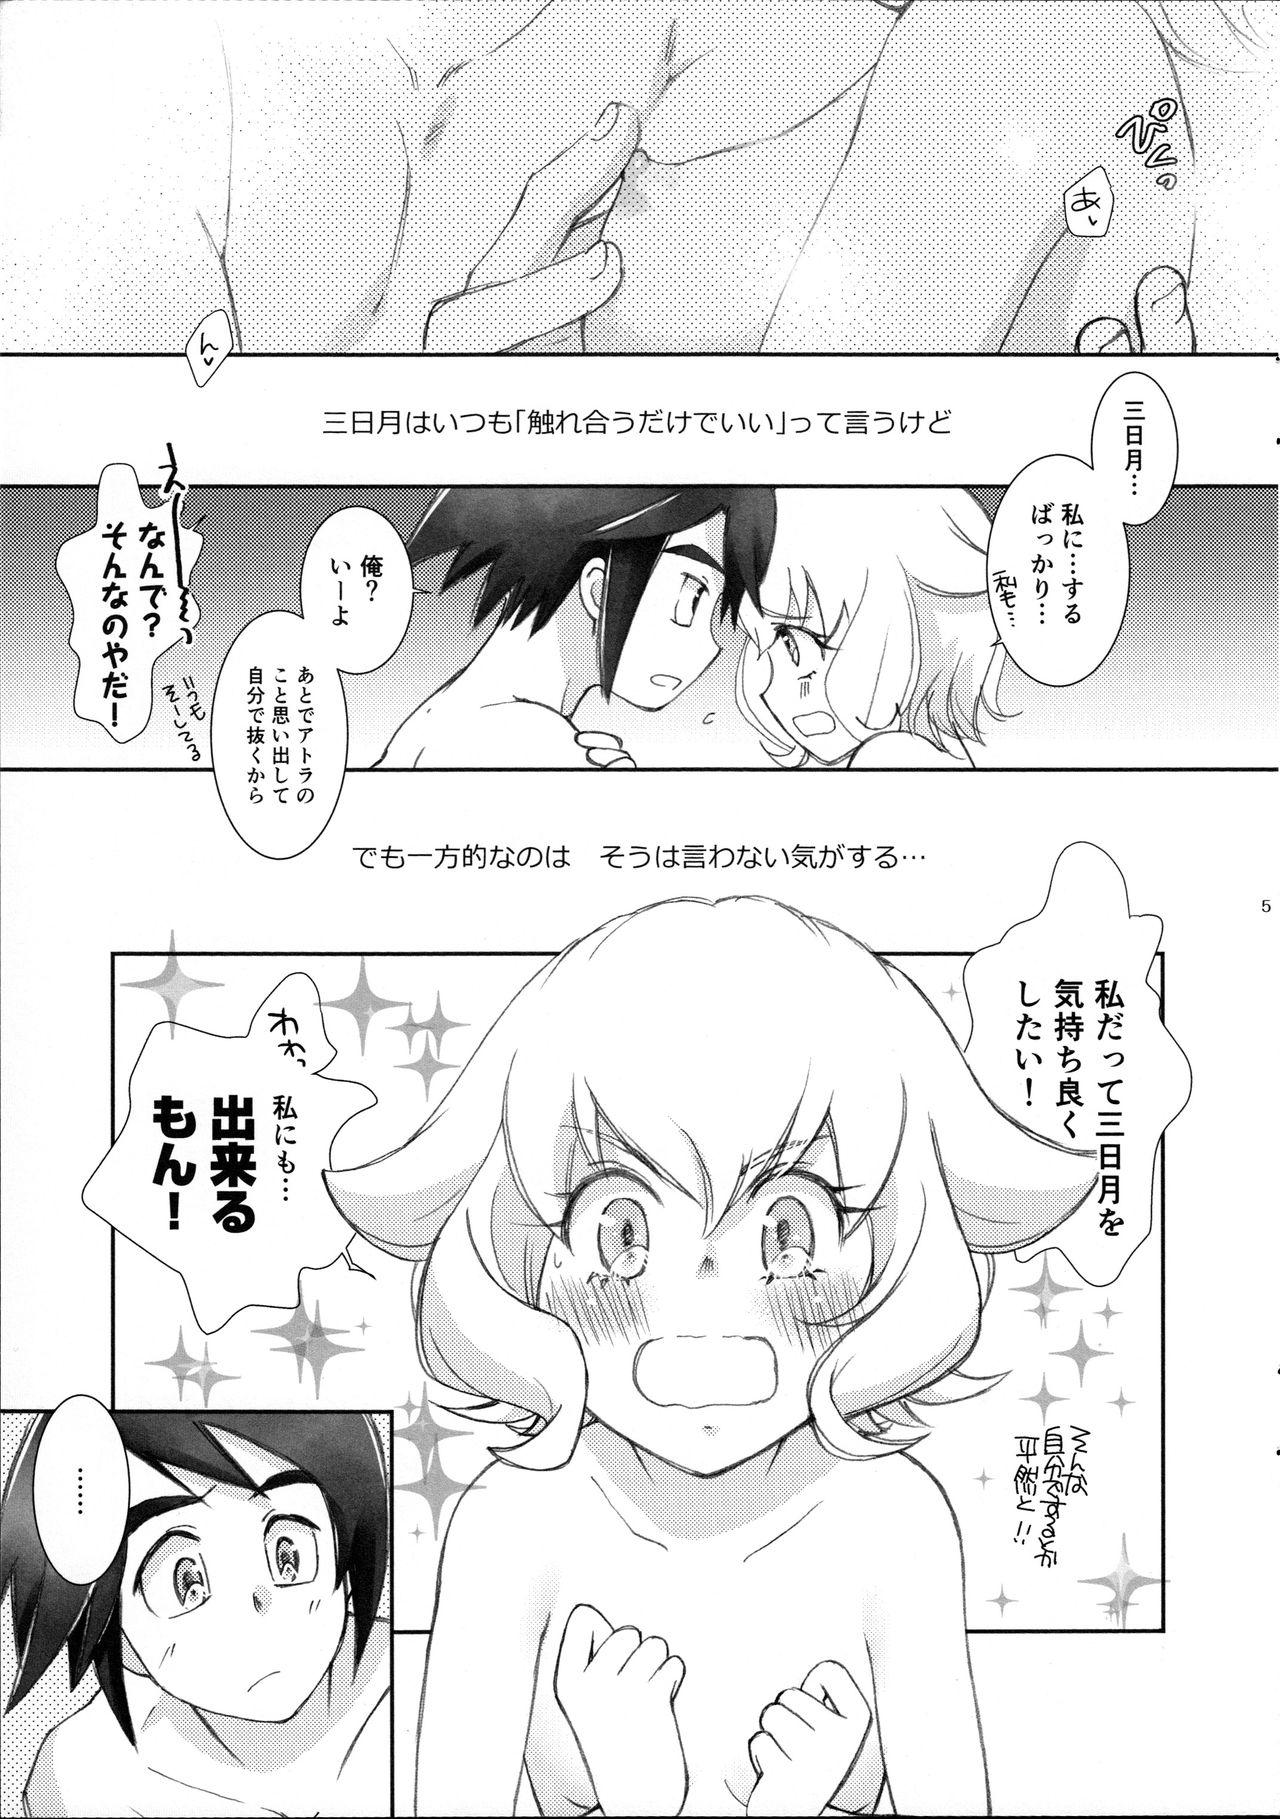 Stream Mikazuki wa Itsumo Saigomade Shinai - Mobile suit gundam tekketsu no orphans Sofa - Page 4